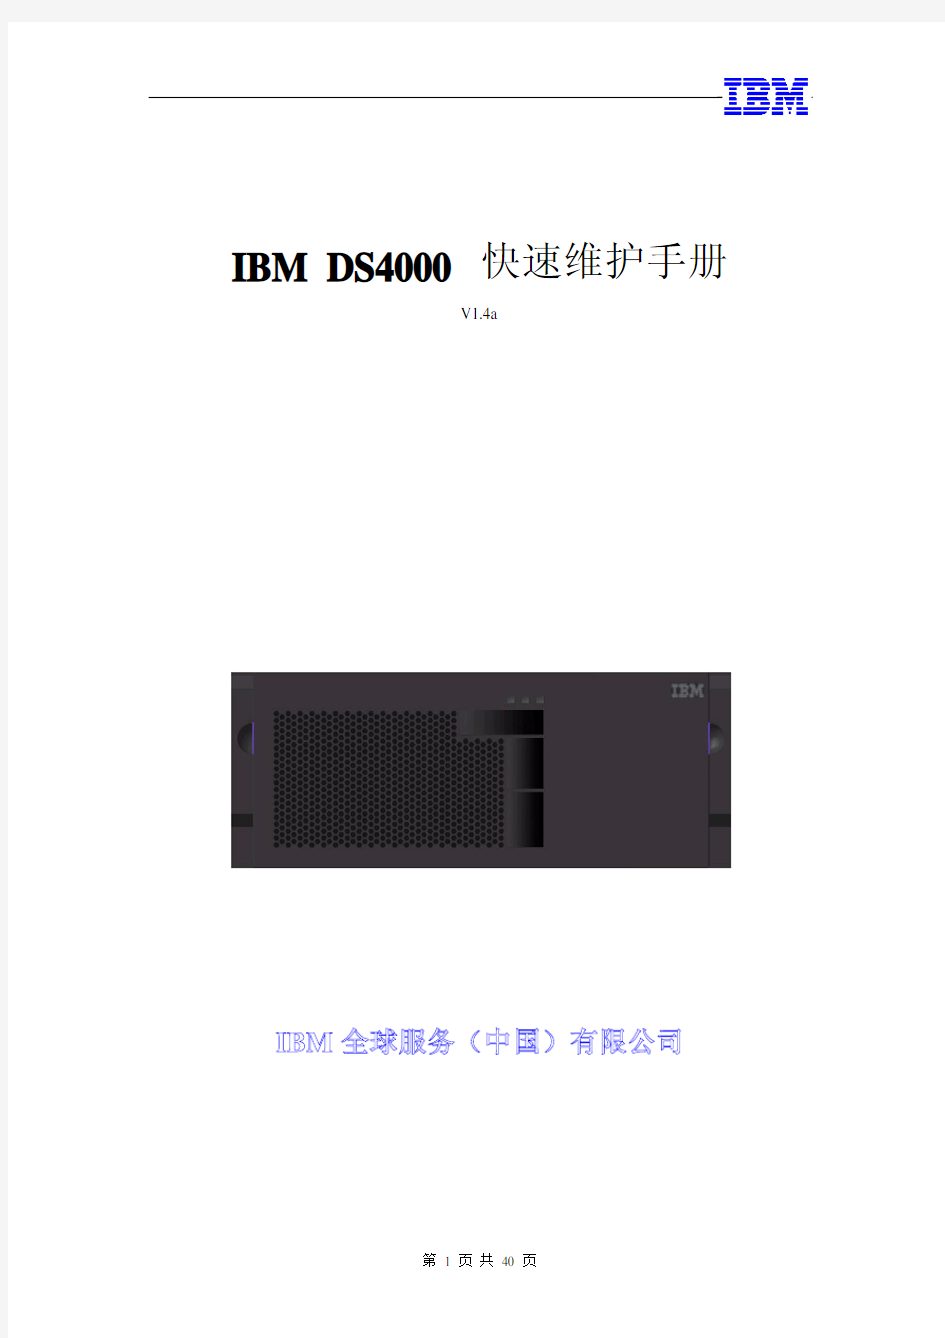 IBM DS4000 快速维护手册_客户使用 v1[1].4a